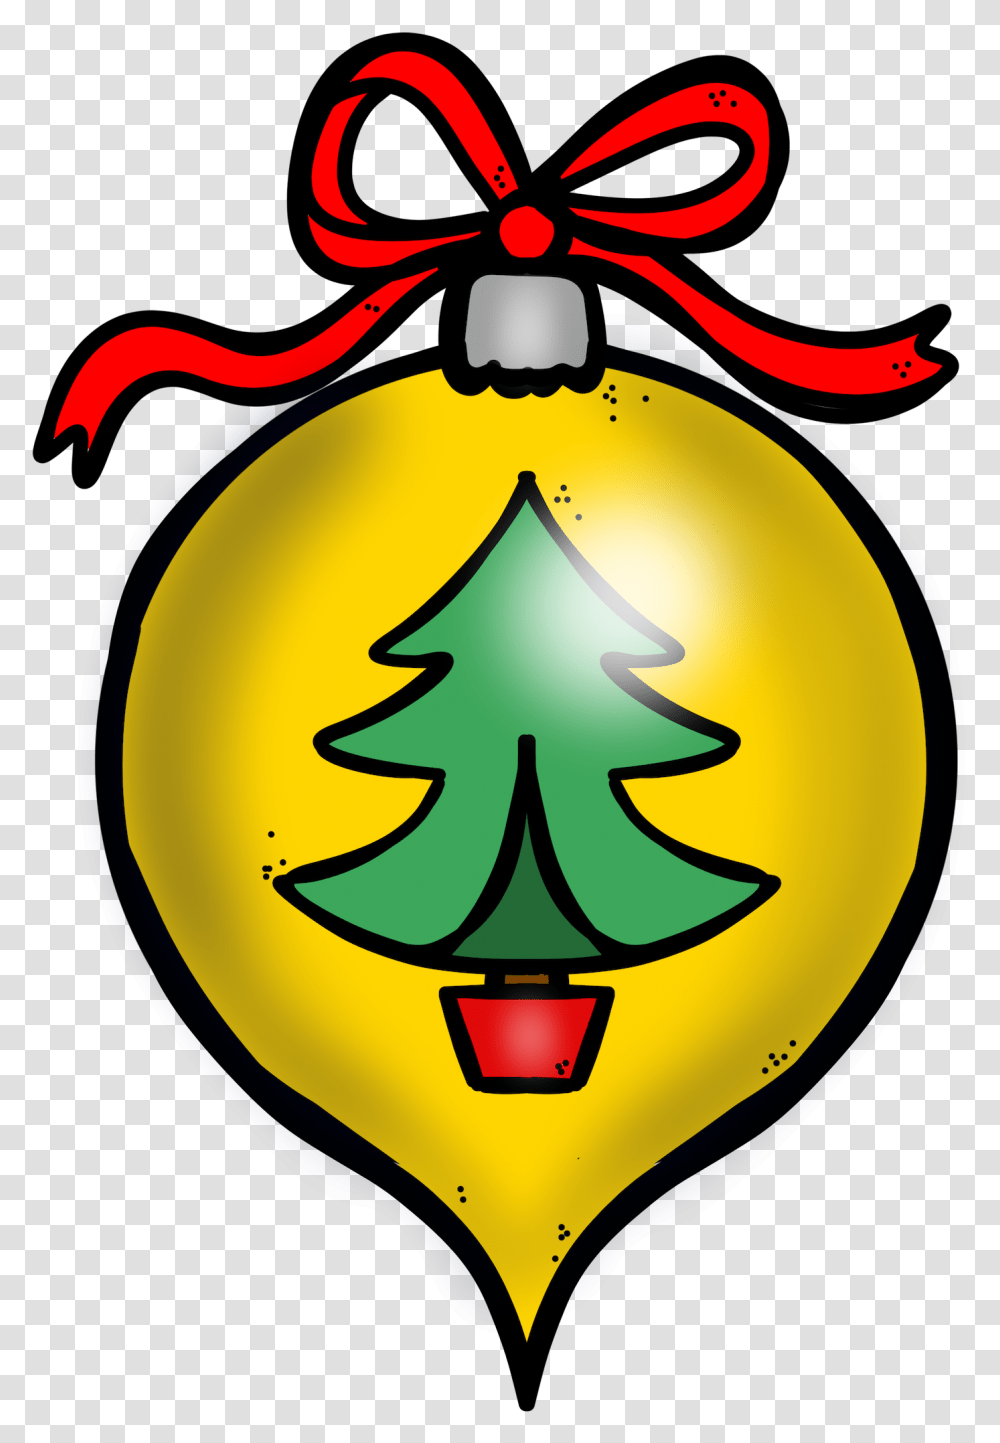 Navidad Christmas Bells Clipart Creative Clips Christmas Clipart, Ornament, Tree, Plant, Christmas Tree Transparent Png